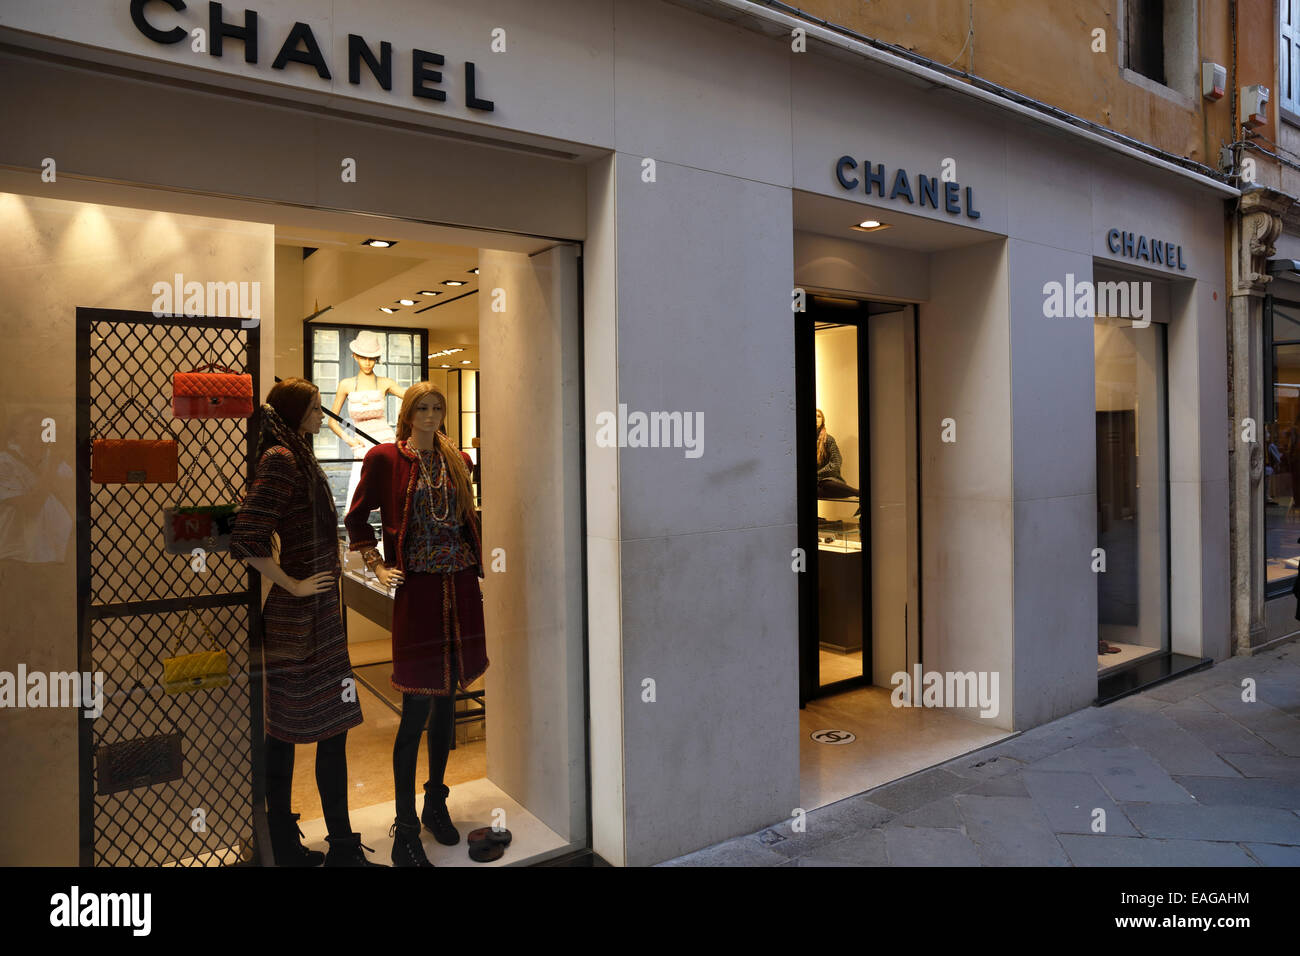 Chanel venice italy immagini e fotografie stock ad alta risoluzione - Alamy